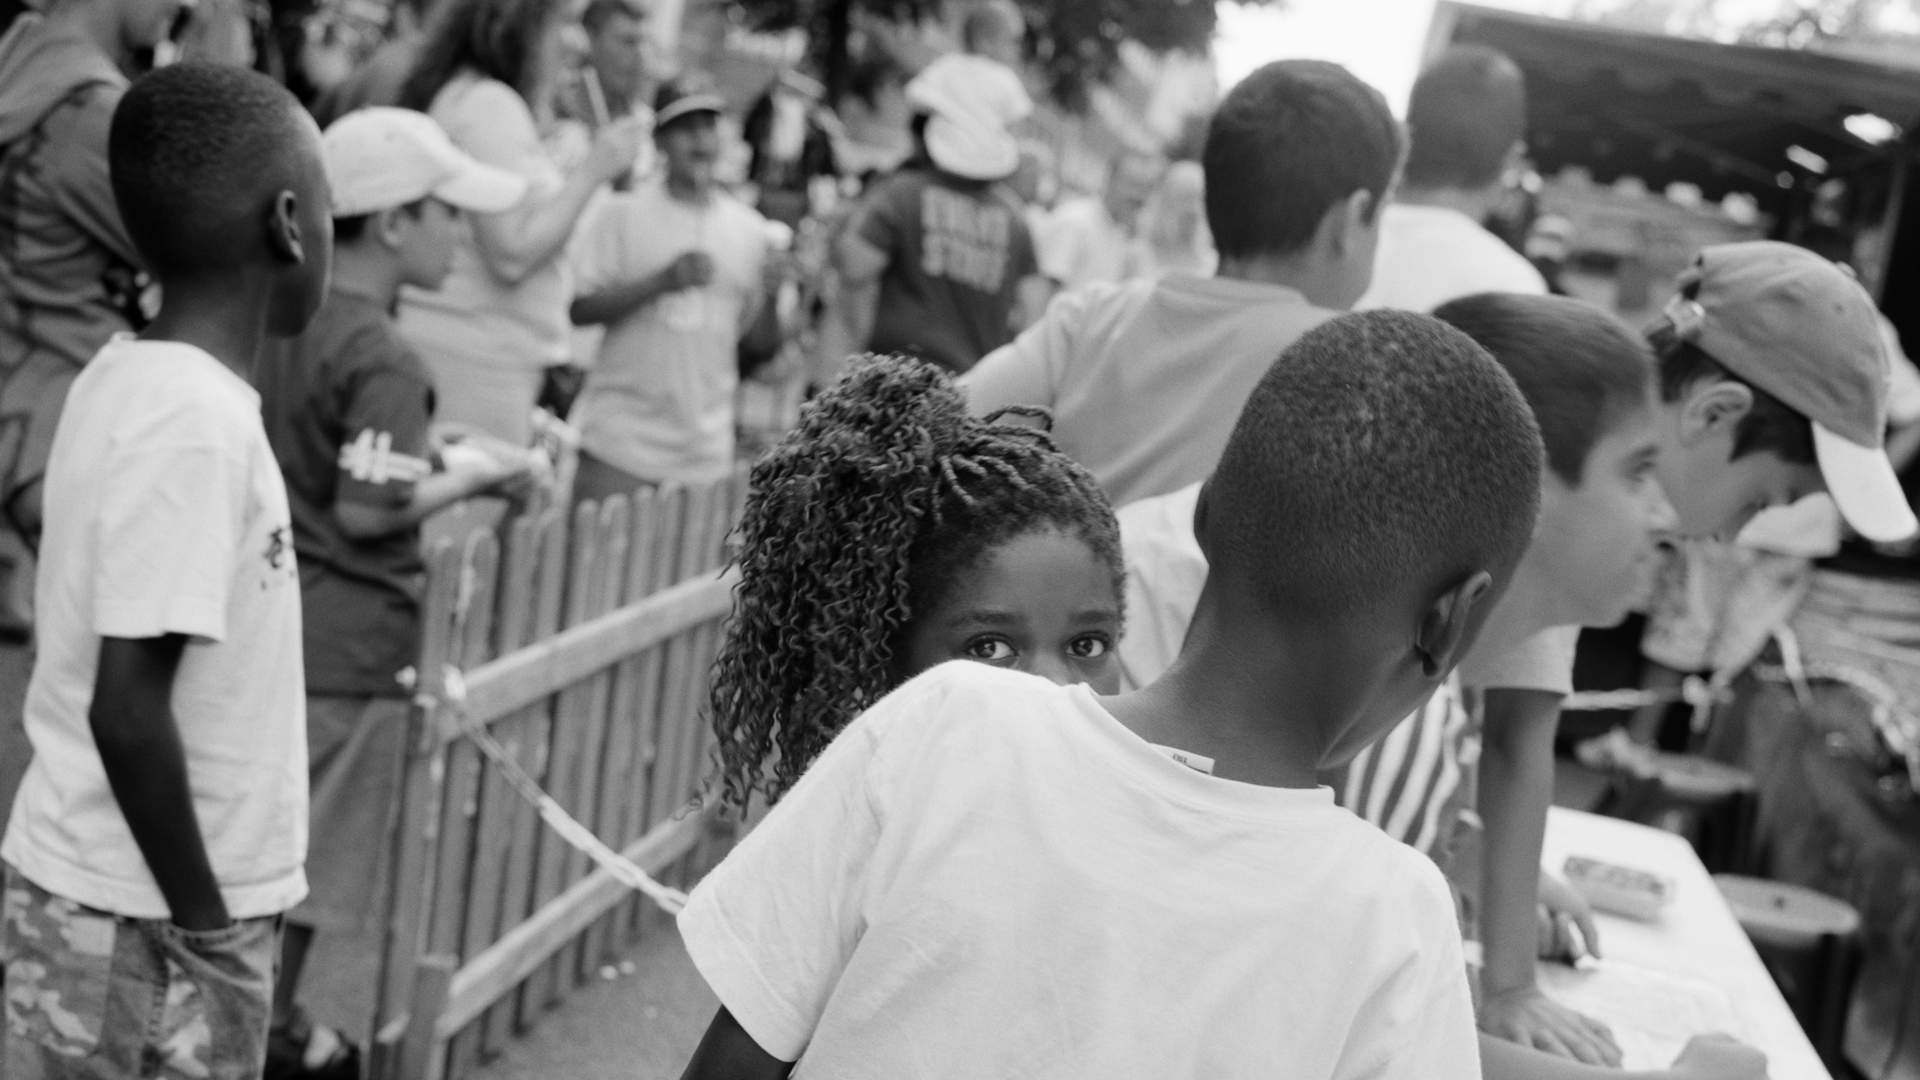 Schwarz-weiß-Fotografie: Im quadratischen Format zeigt die Fotografie mehrere Personen, die vorwiegend mit dem Rücken zur Kamera stehen, während eine junge, weiblich gelesene Person direkt in die Kamera blickt.